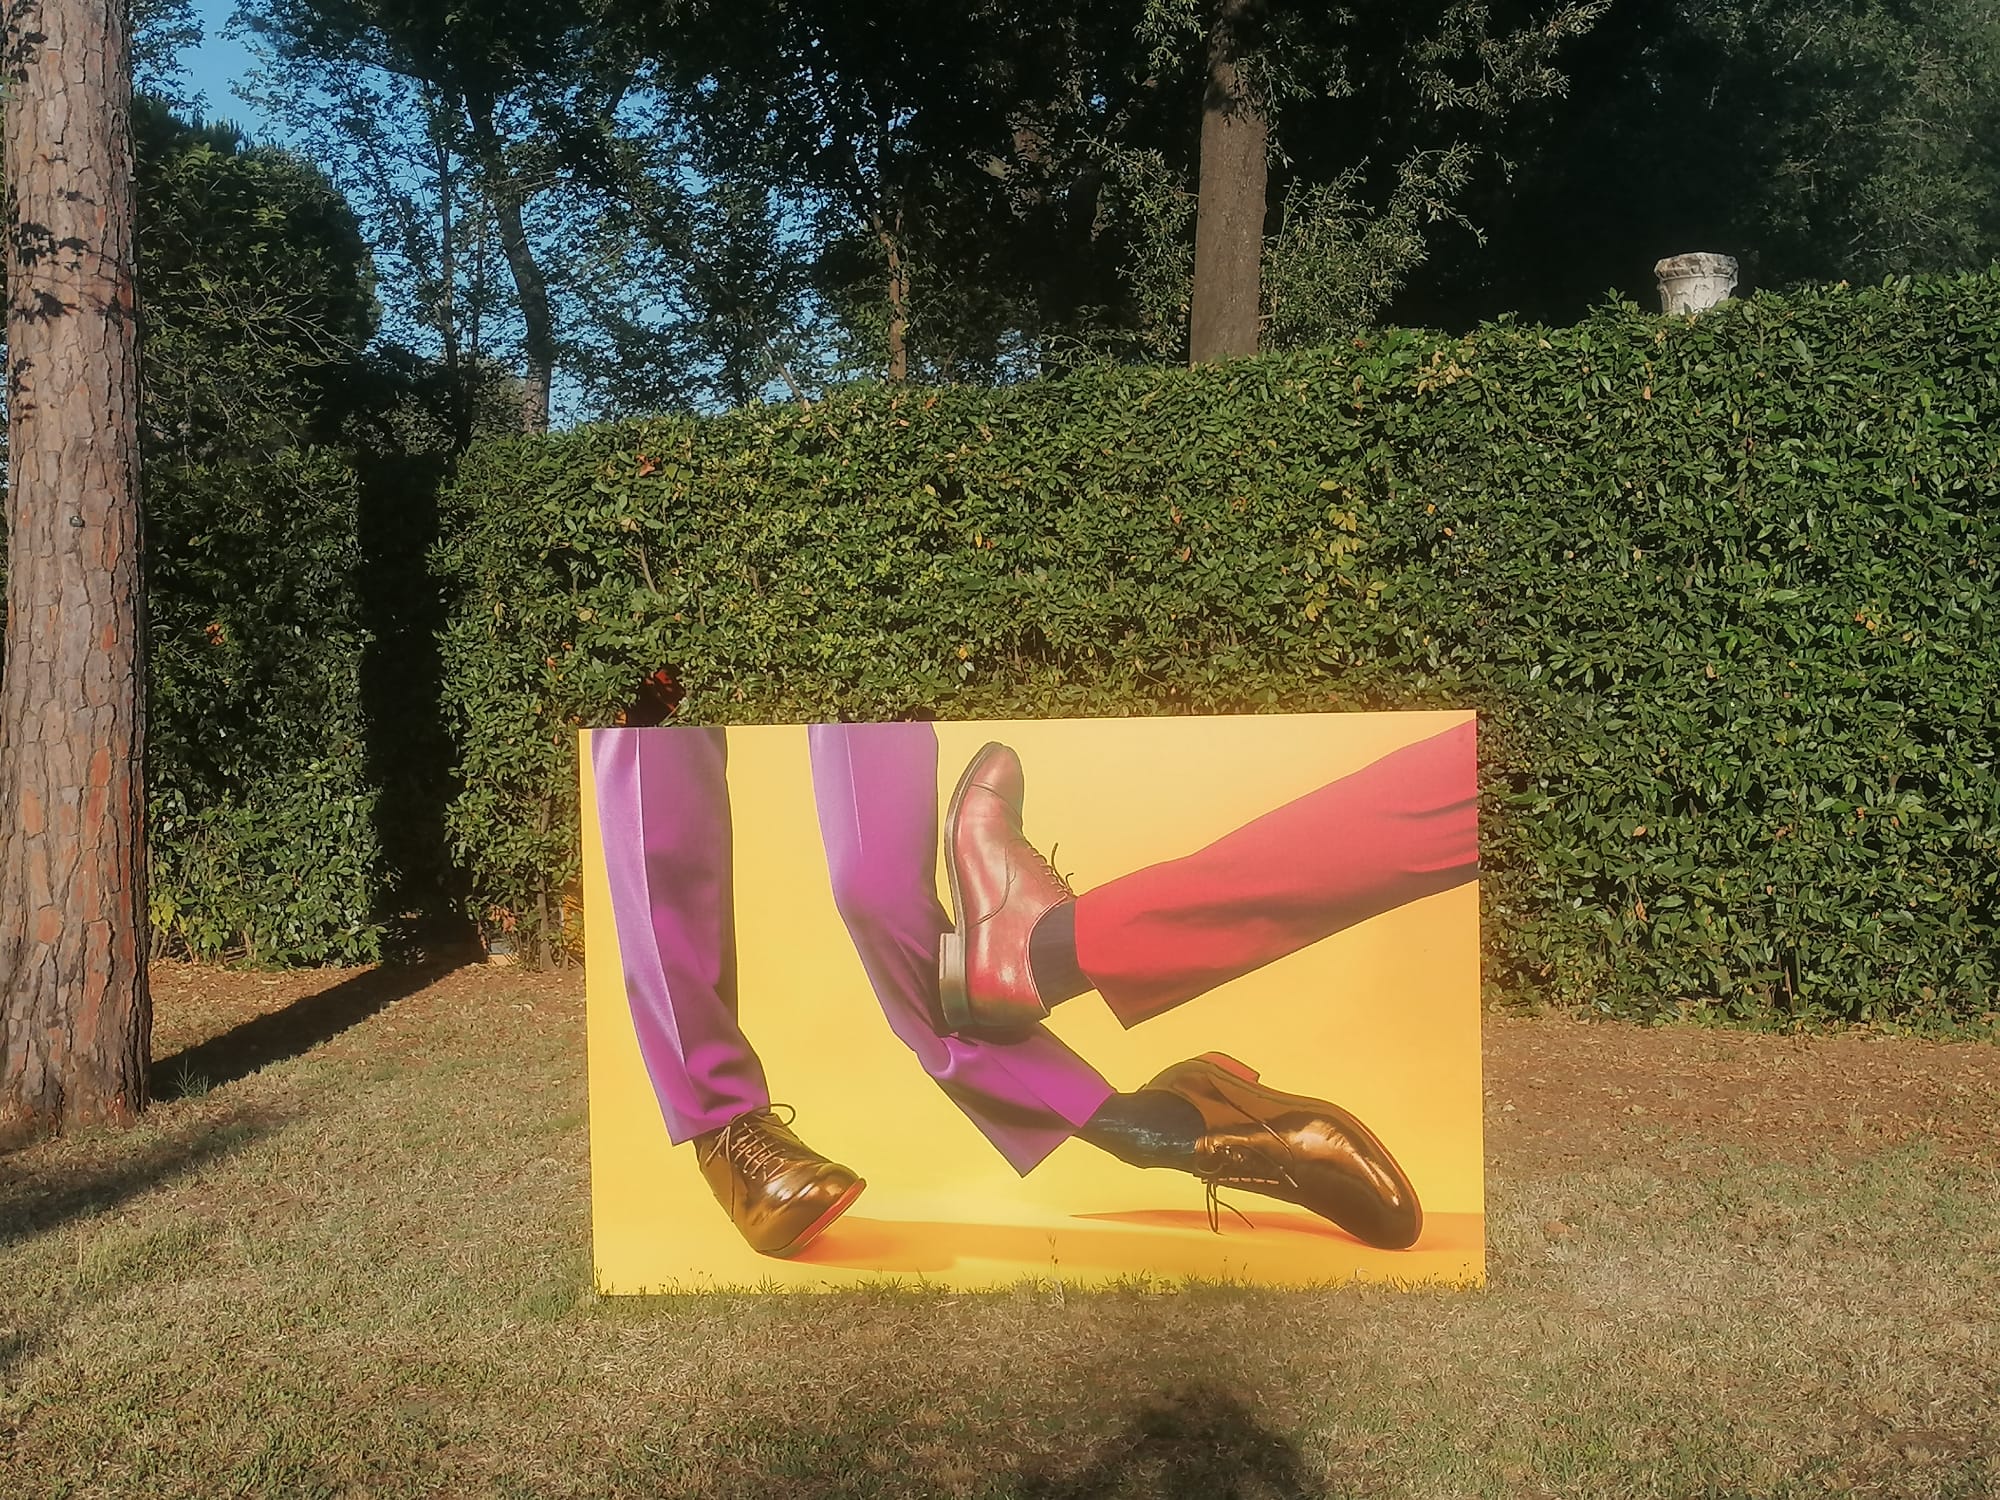 LA MOSTRA / Parr-Cattelan-Ferrari: ipercolore, surrealismo e giochi al pubblico nei viali di Villa Medici